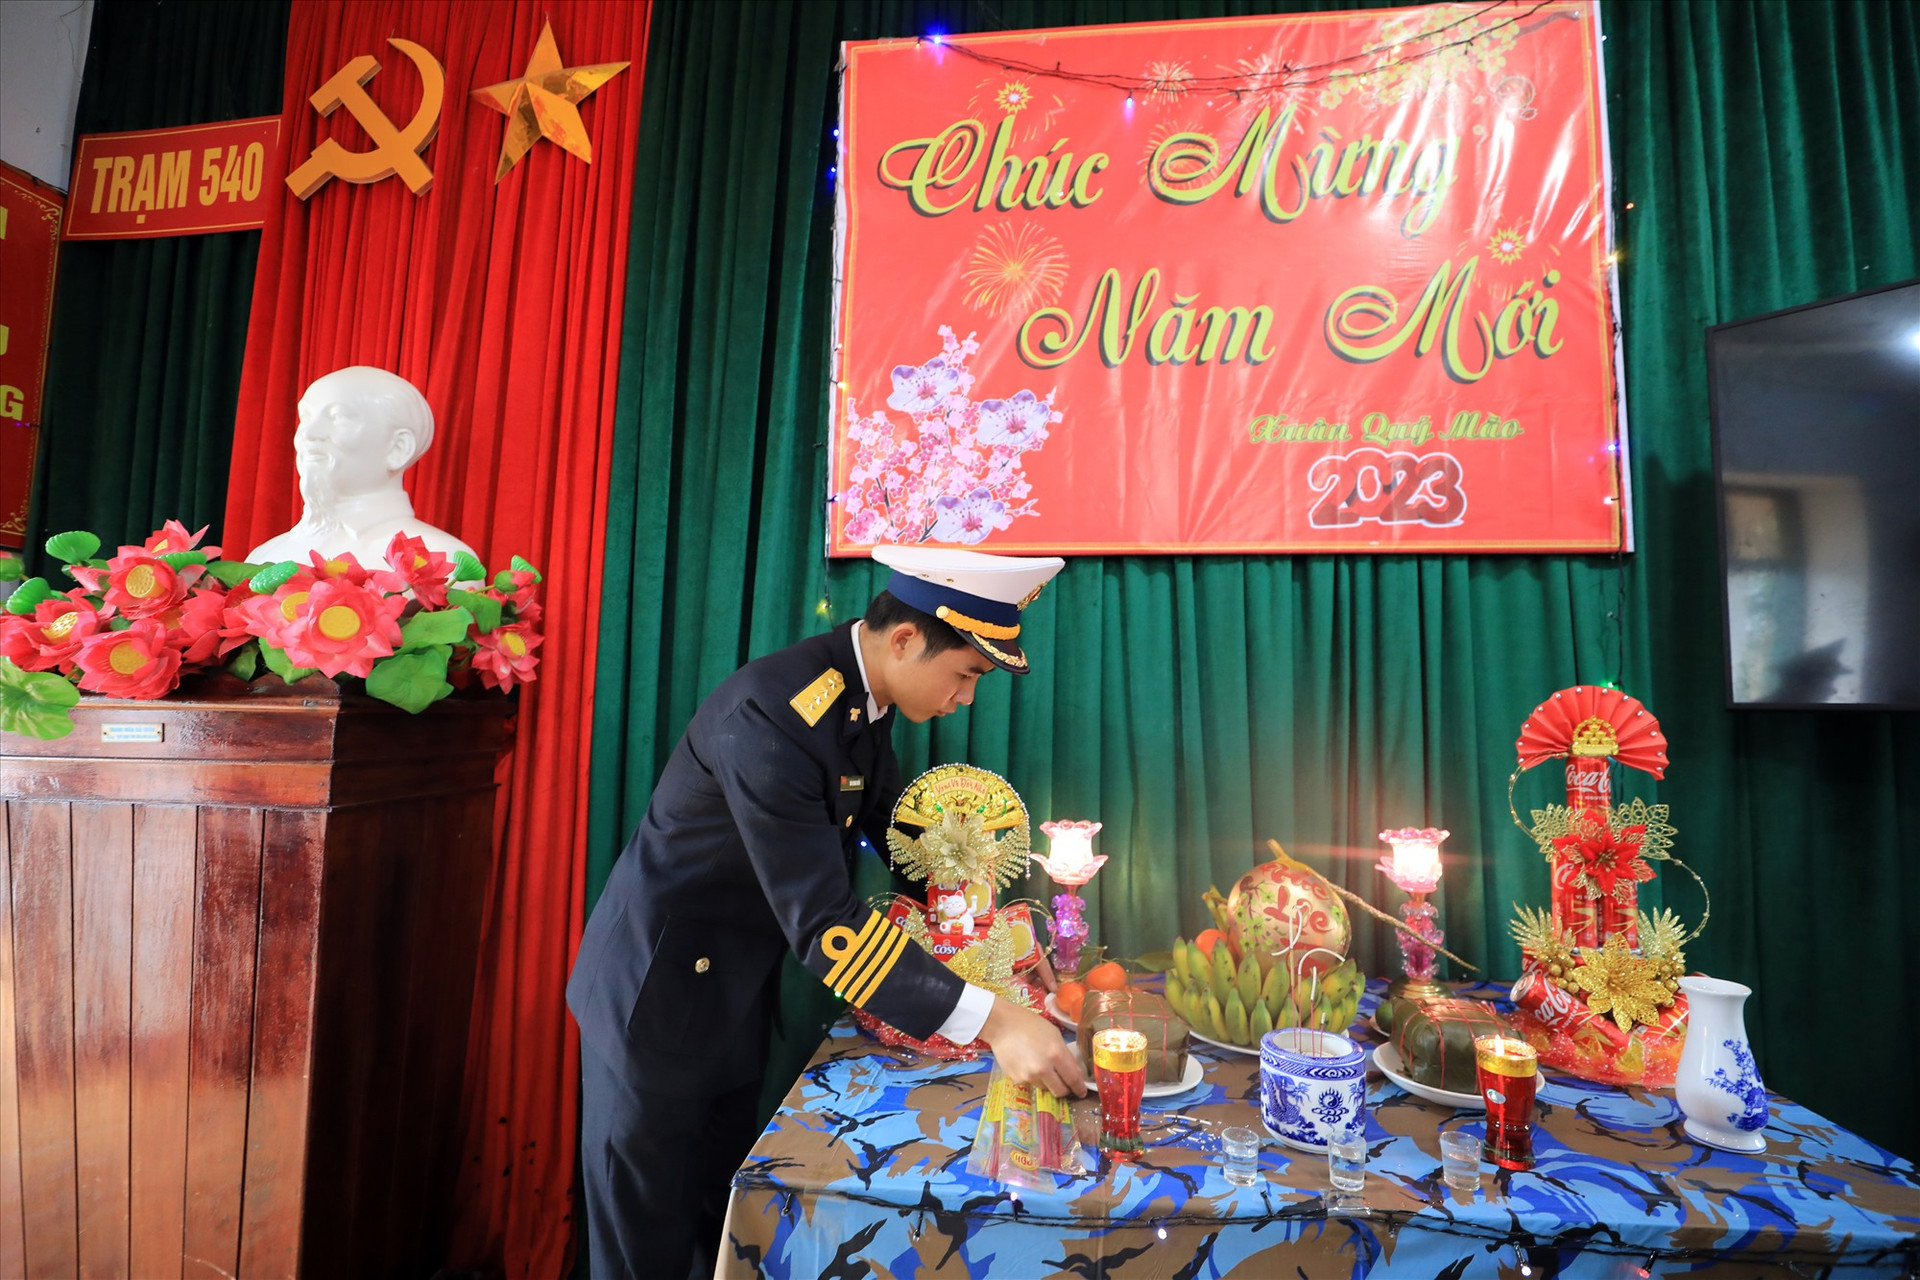 Đại úy Đào Quang Hiển đặt bánh chưng từ đất liền lên bàn thờ đón xuân ở đơn vị trạm Ra-đa 540 ở đảo Cồn Cỏ. Ảnh: T.C